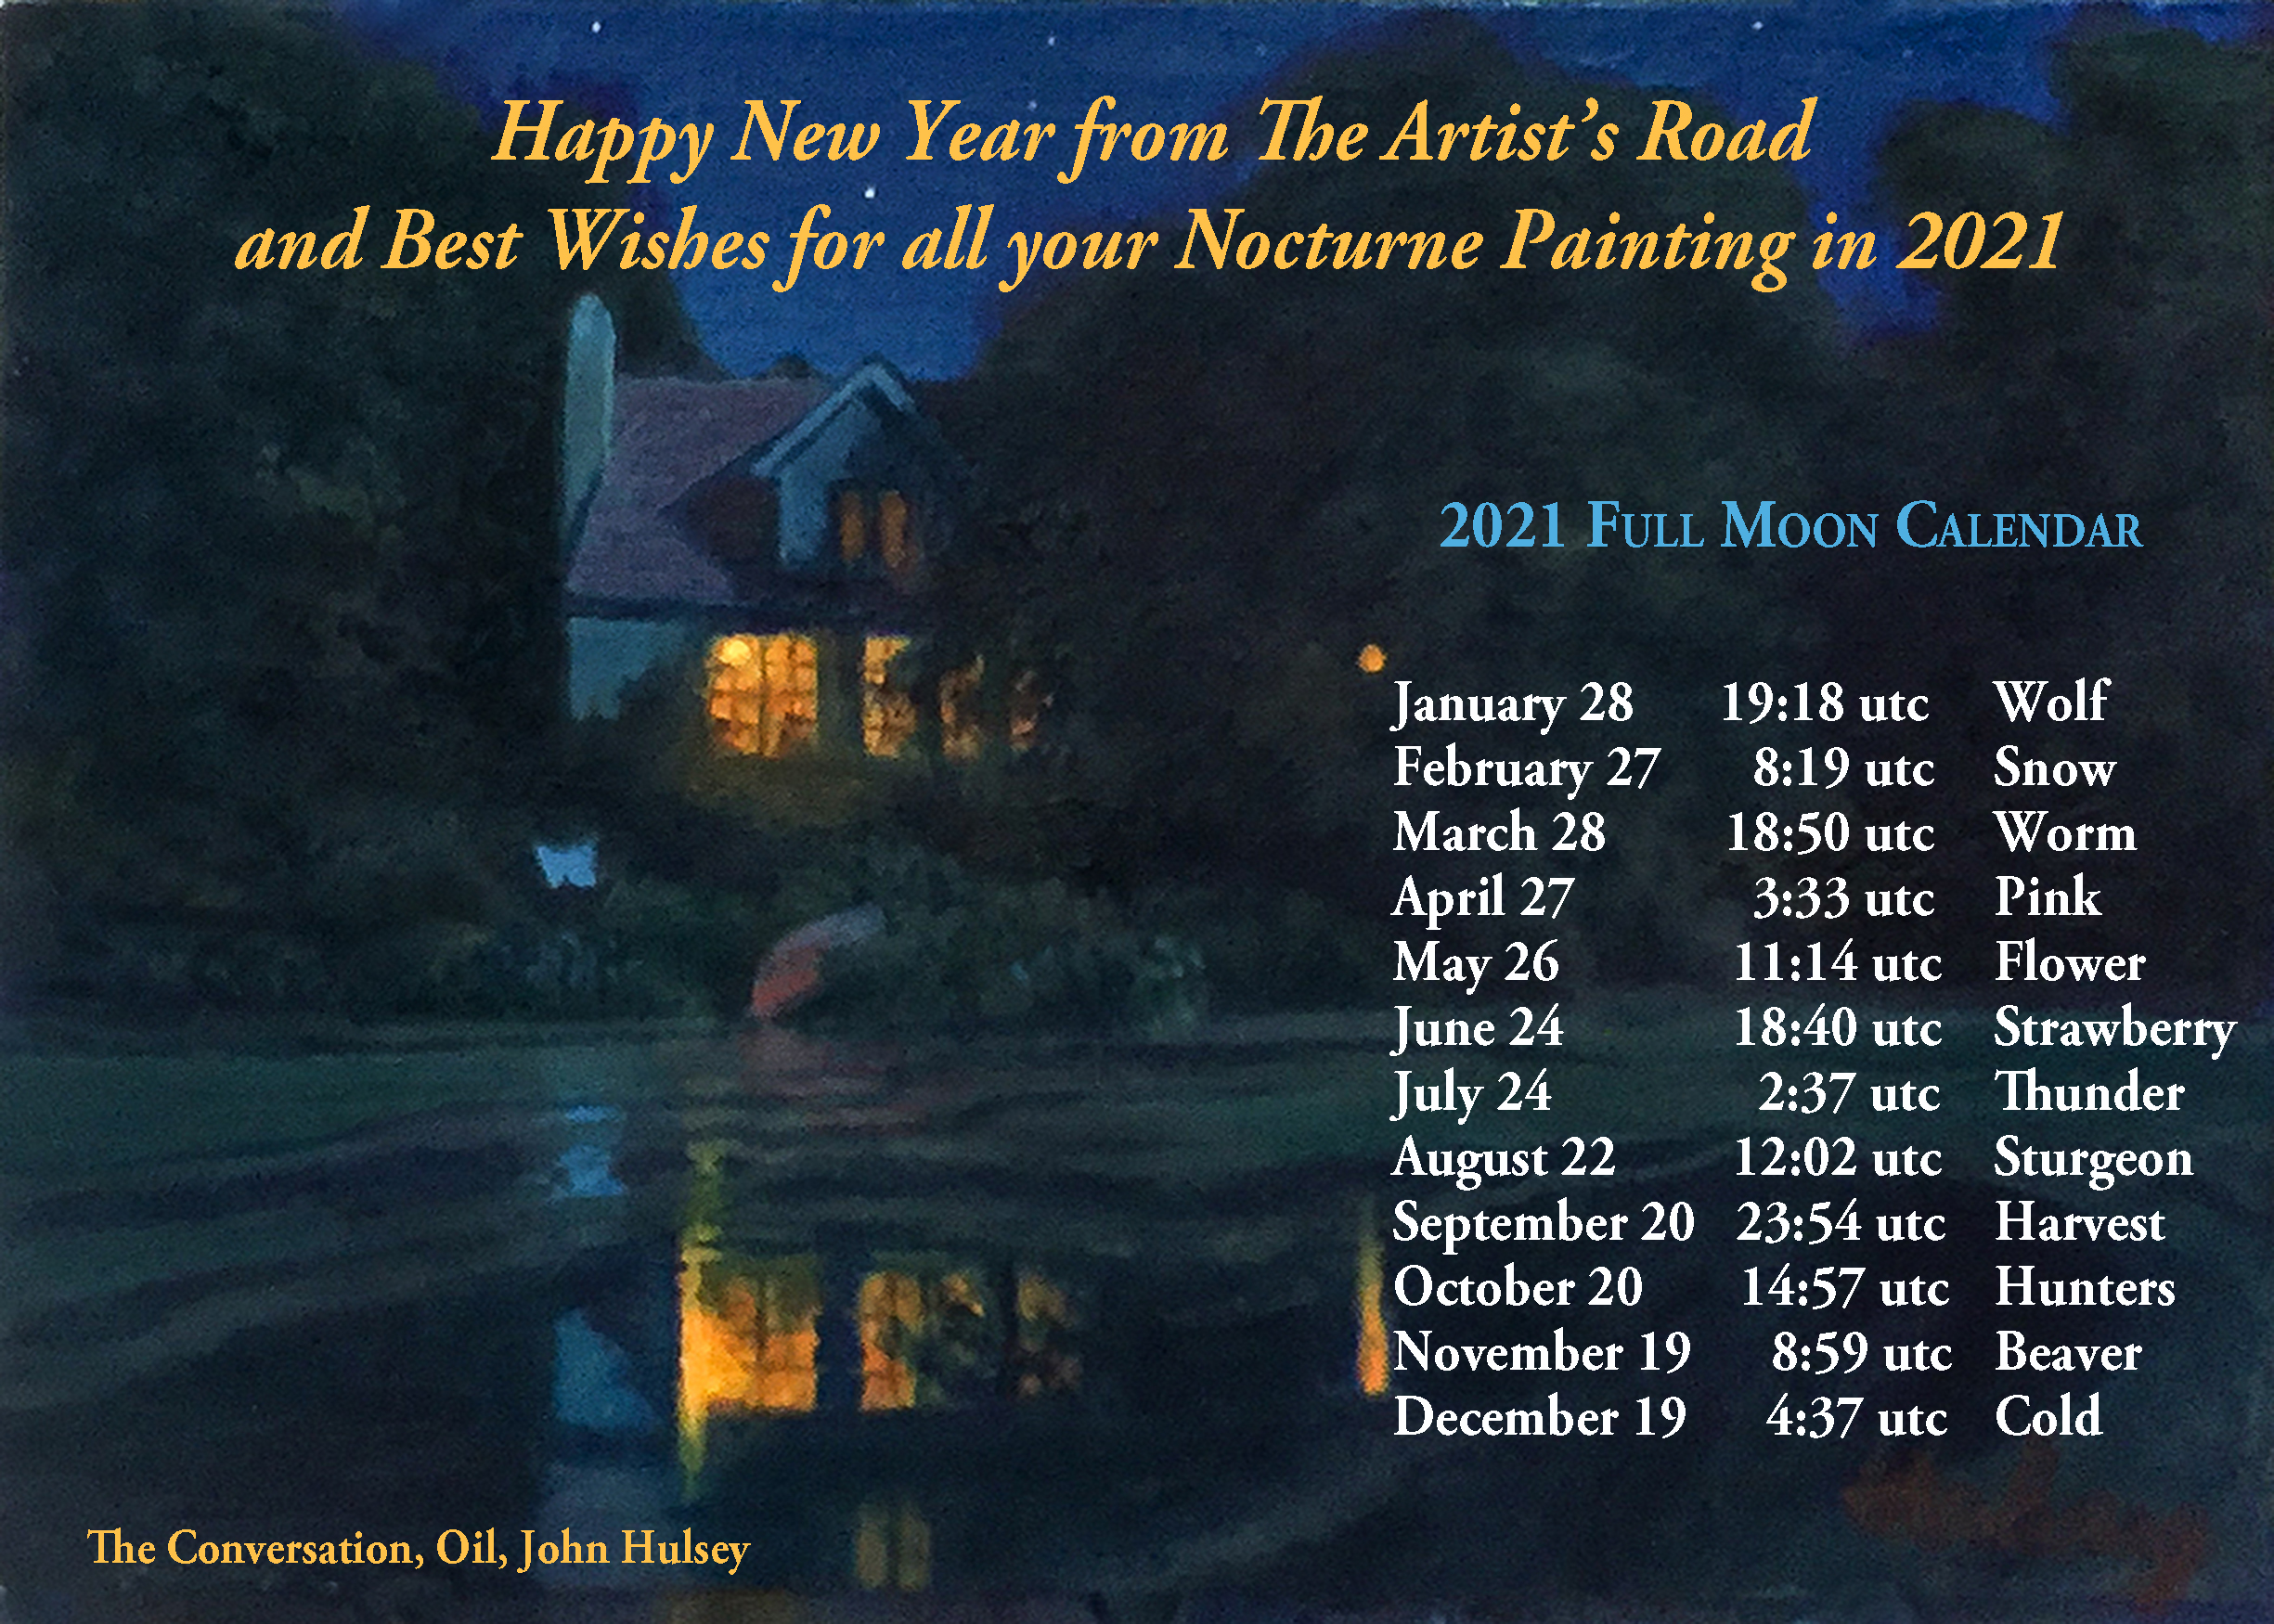 TAR 2020 New Year Full Moon Calendar